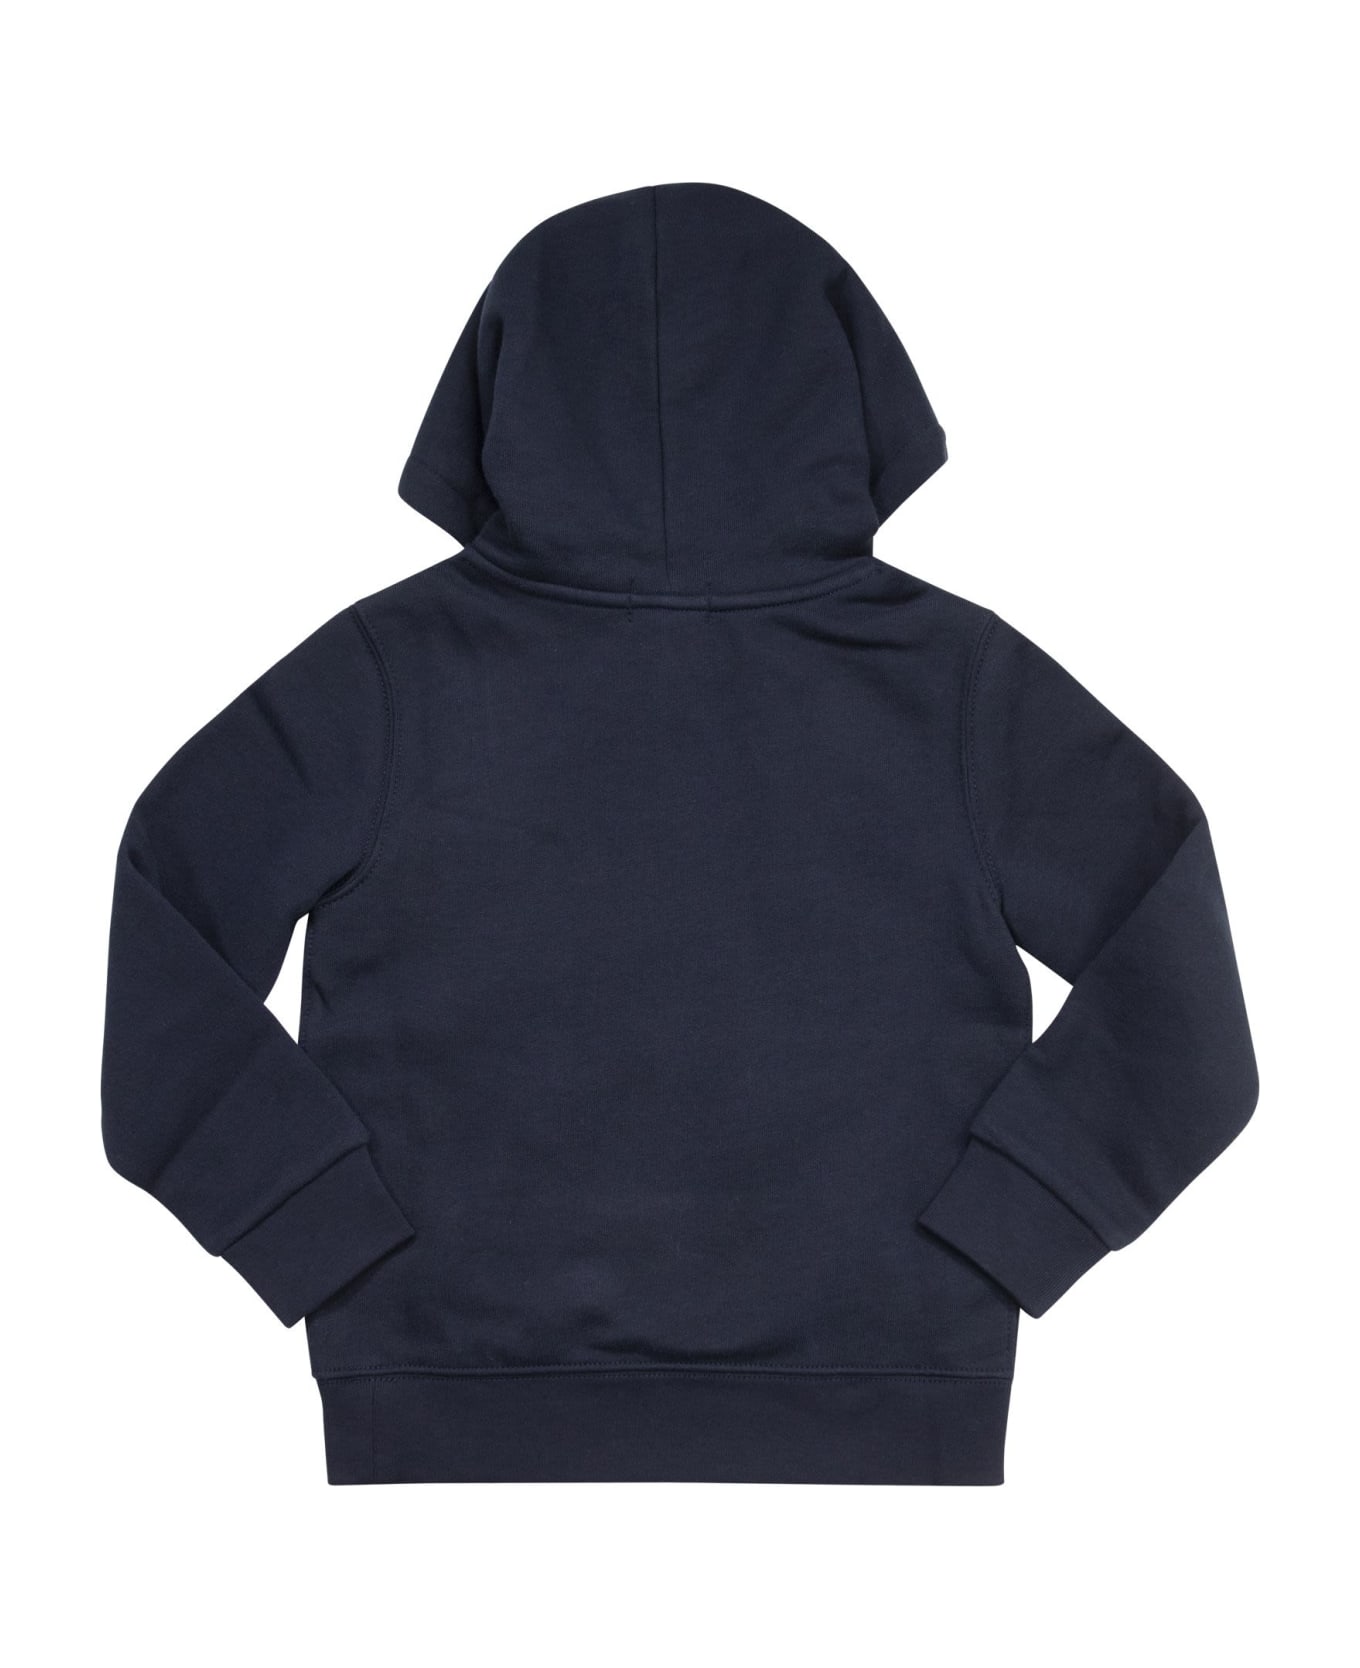 Polo Ralph Lauren Hooded Sweatshirt - Navy